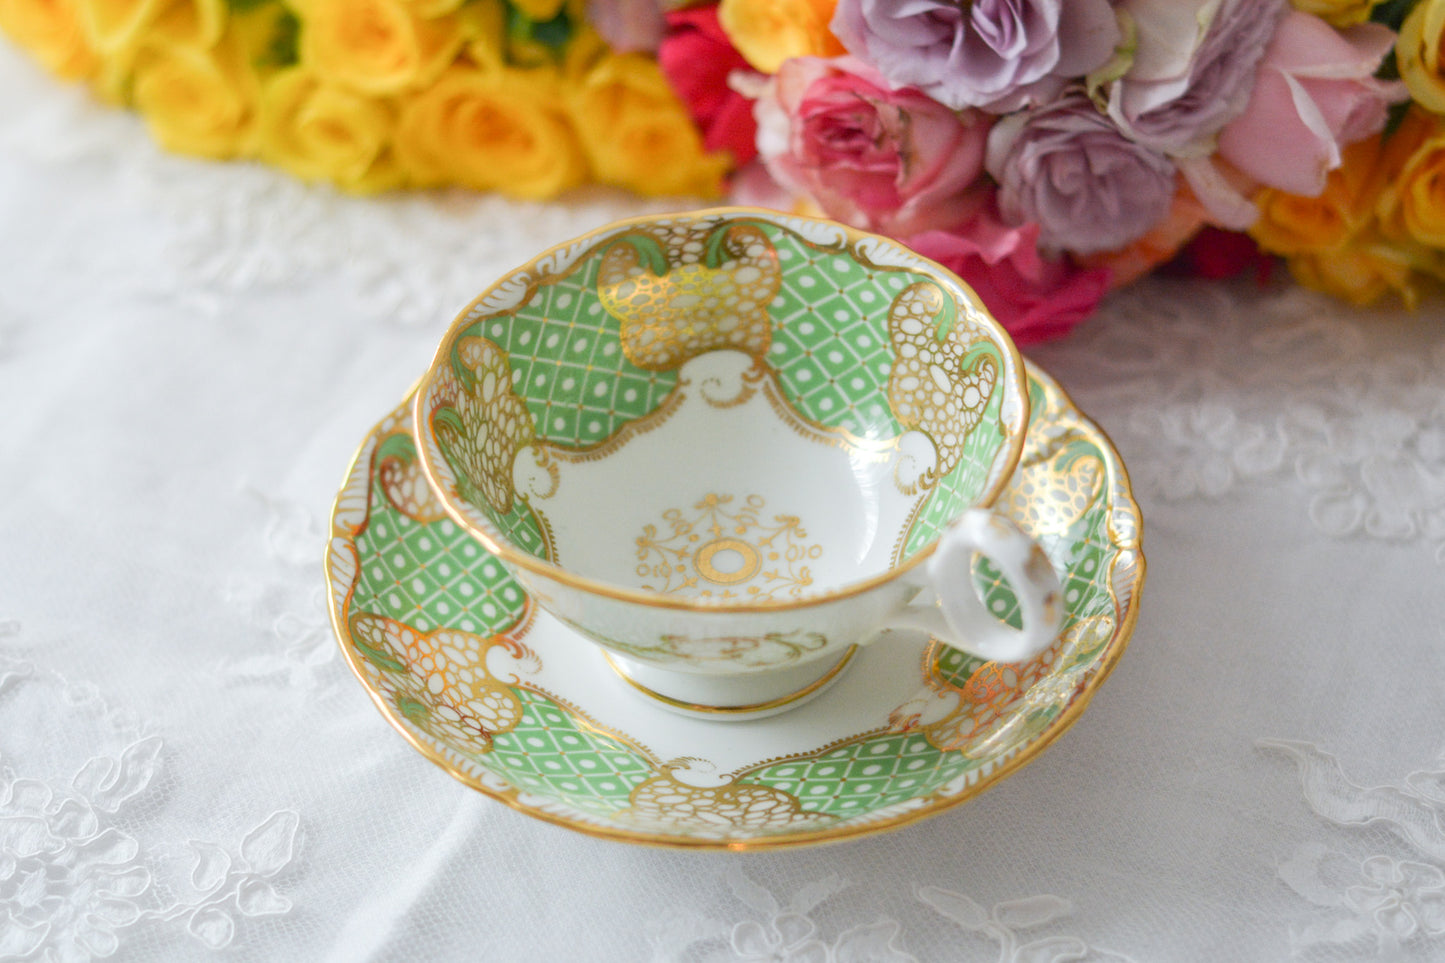 ダベンポートの美しいカップ&ソーサー。グリーンカラーと金彩の細かな模様がとても美しいです。Rose Antiquesは英国アンティーク、ヴィンテージ食器をご紹介しています。